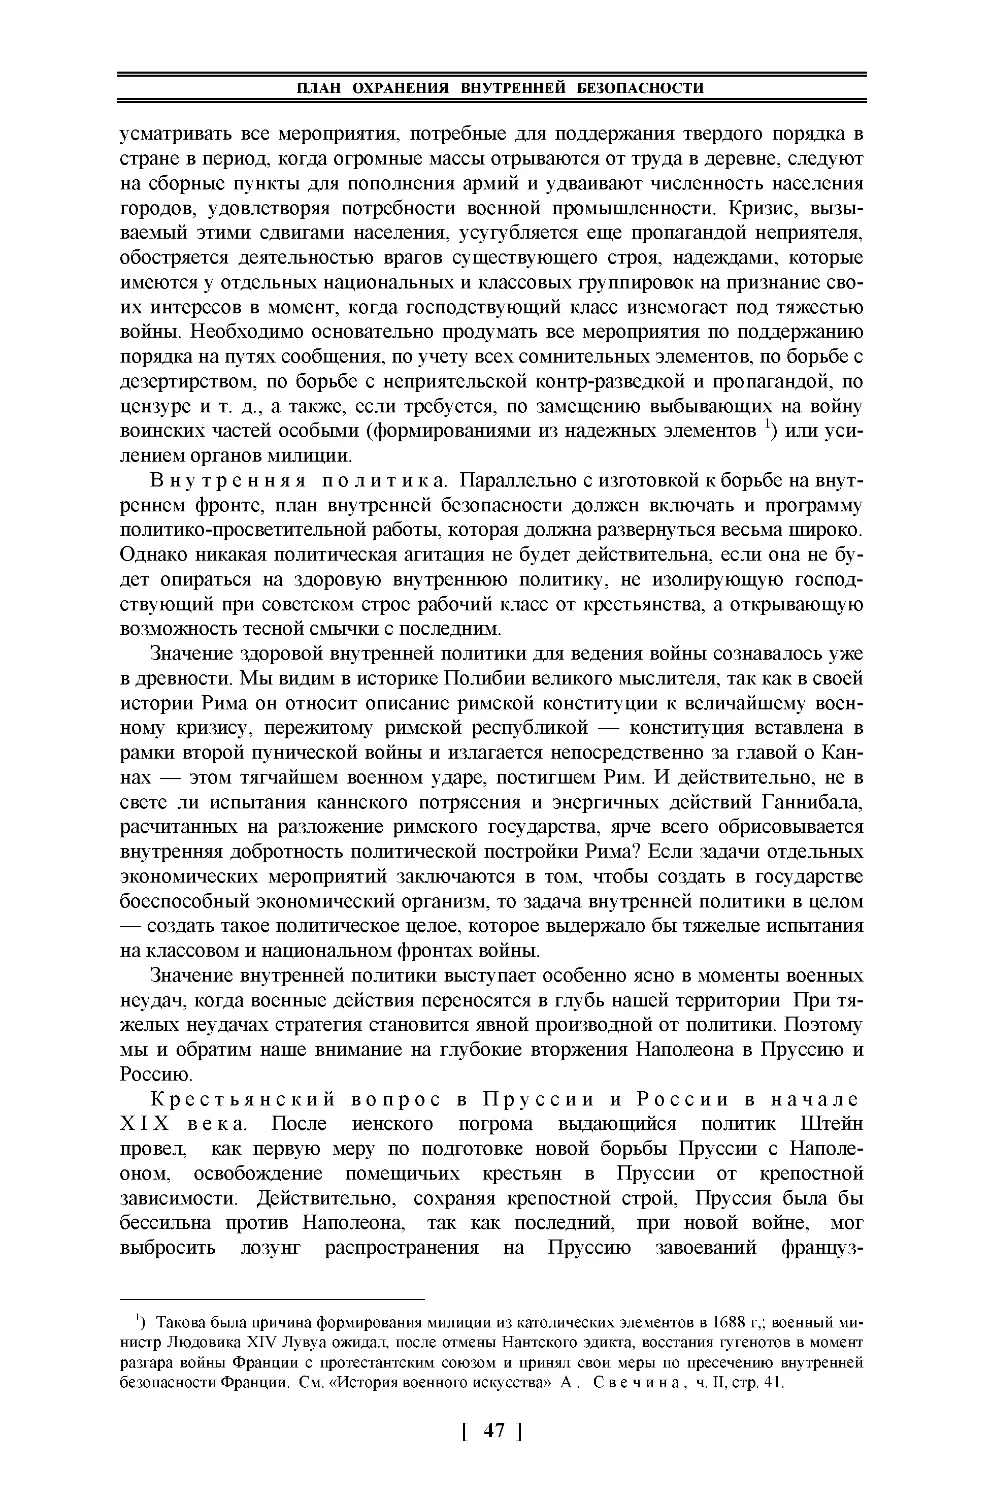 Внутренняя политика
Крестьянский вопрос в Пруссии и России в начале XIX века